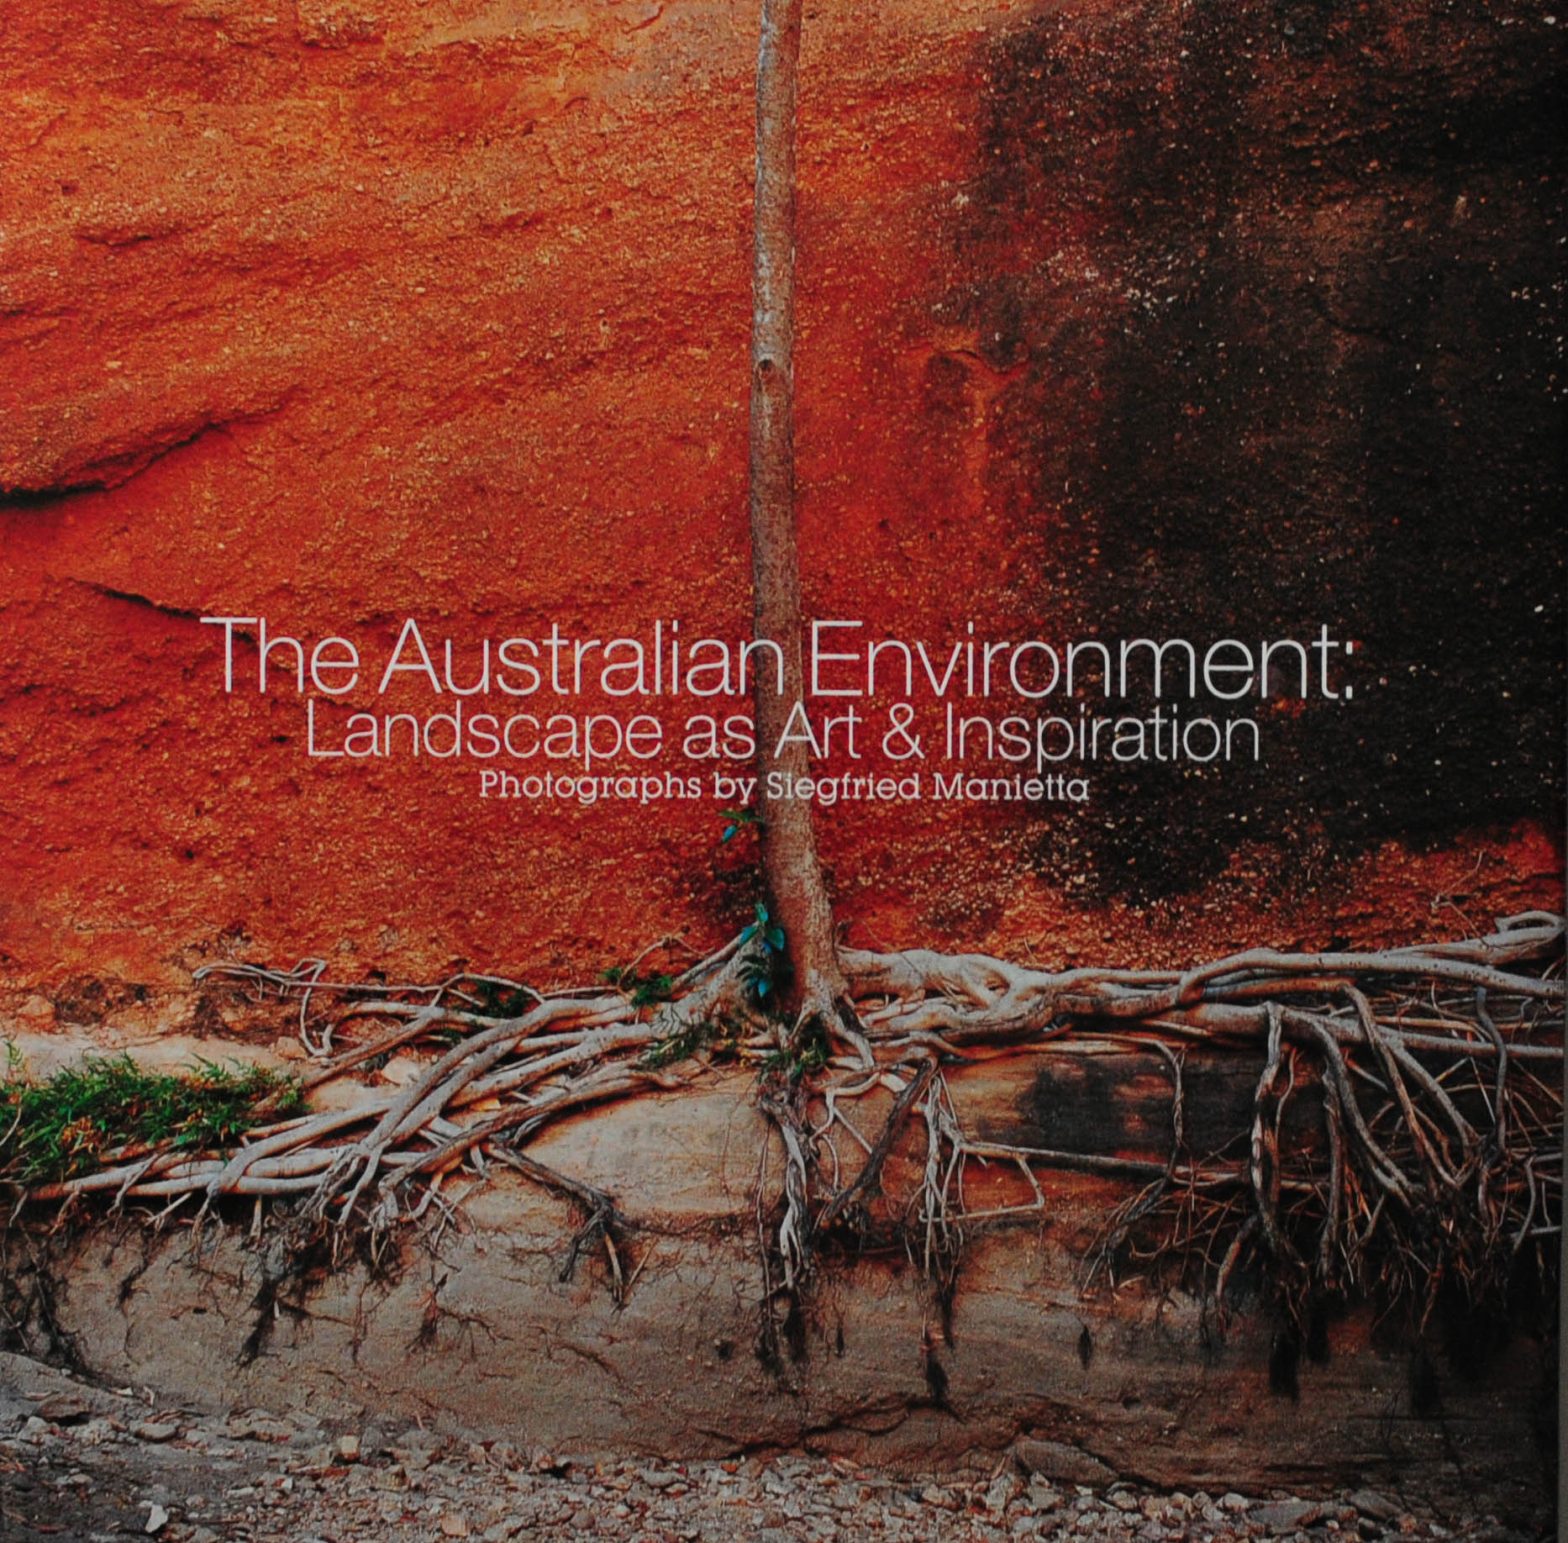 The Australian Environment: Landscape as Art & Inspiration, Siegfried Manietta